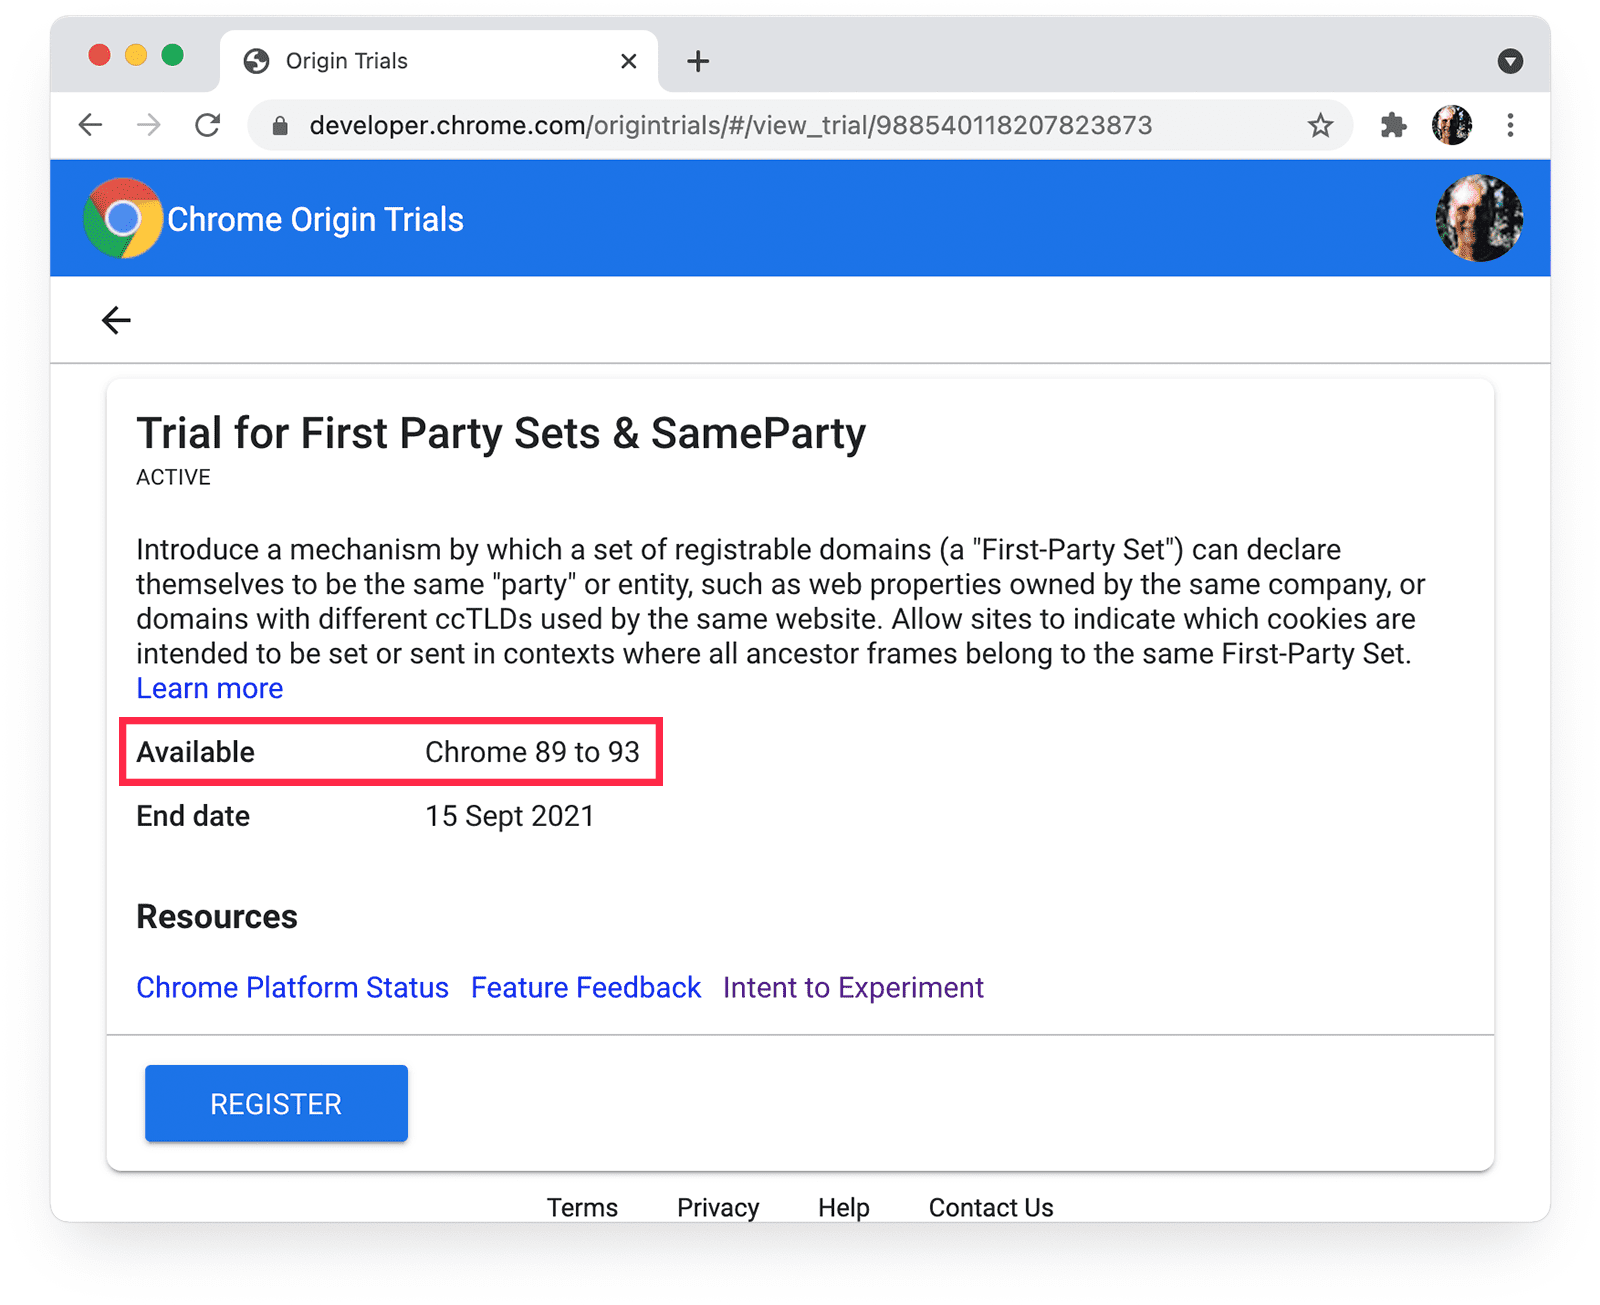 Página de pruebas de origen de Chrome
para conjuntos propios y SameParty con la disponibilidad de Chrome destacada